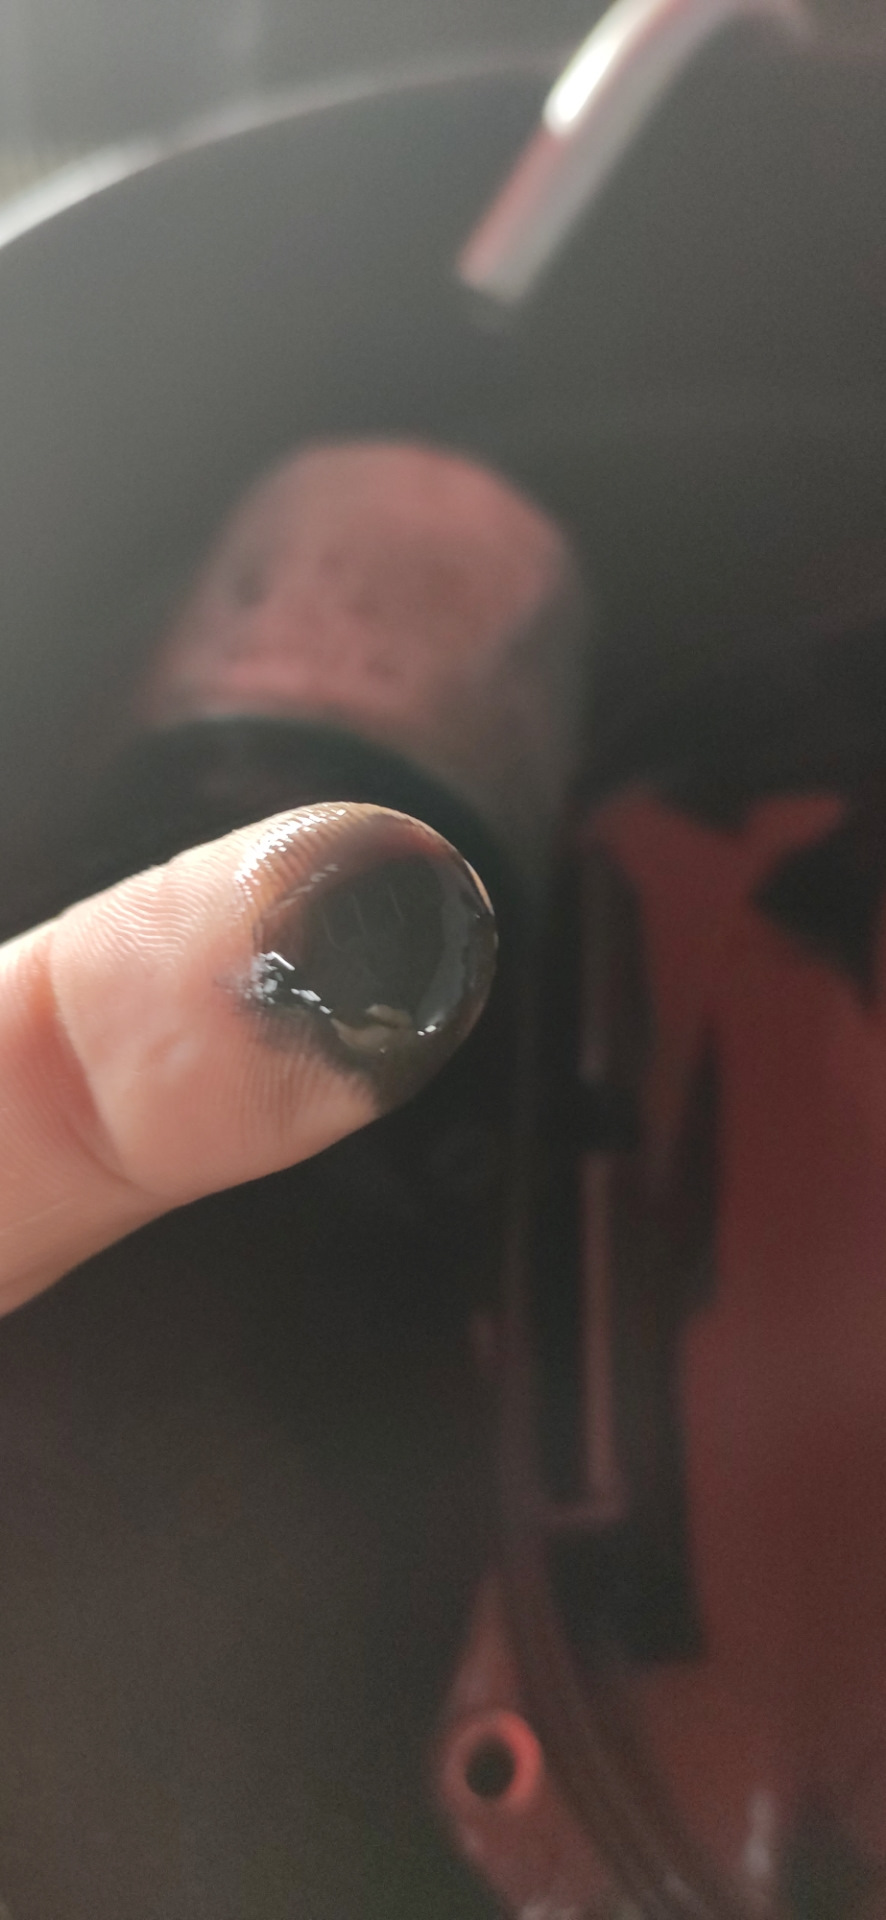 Металлическая пыль на пальце